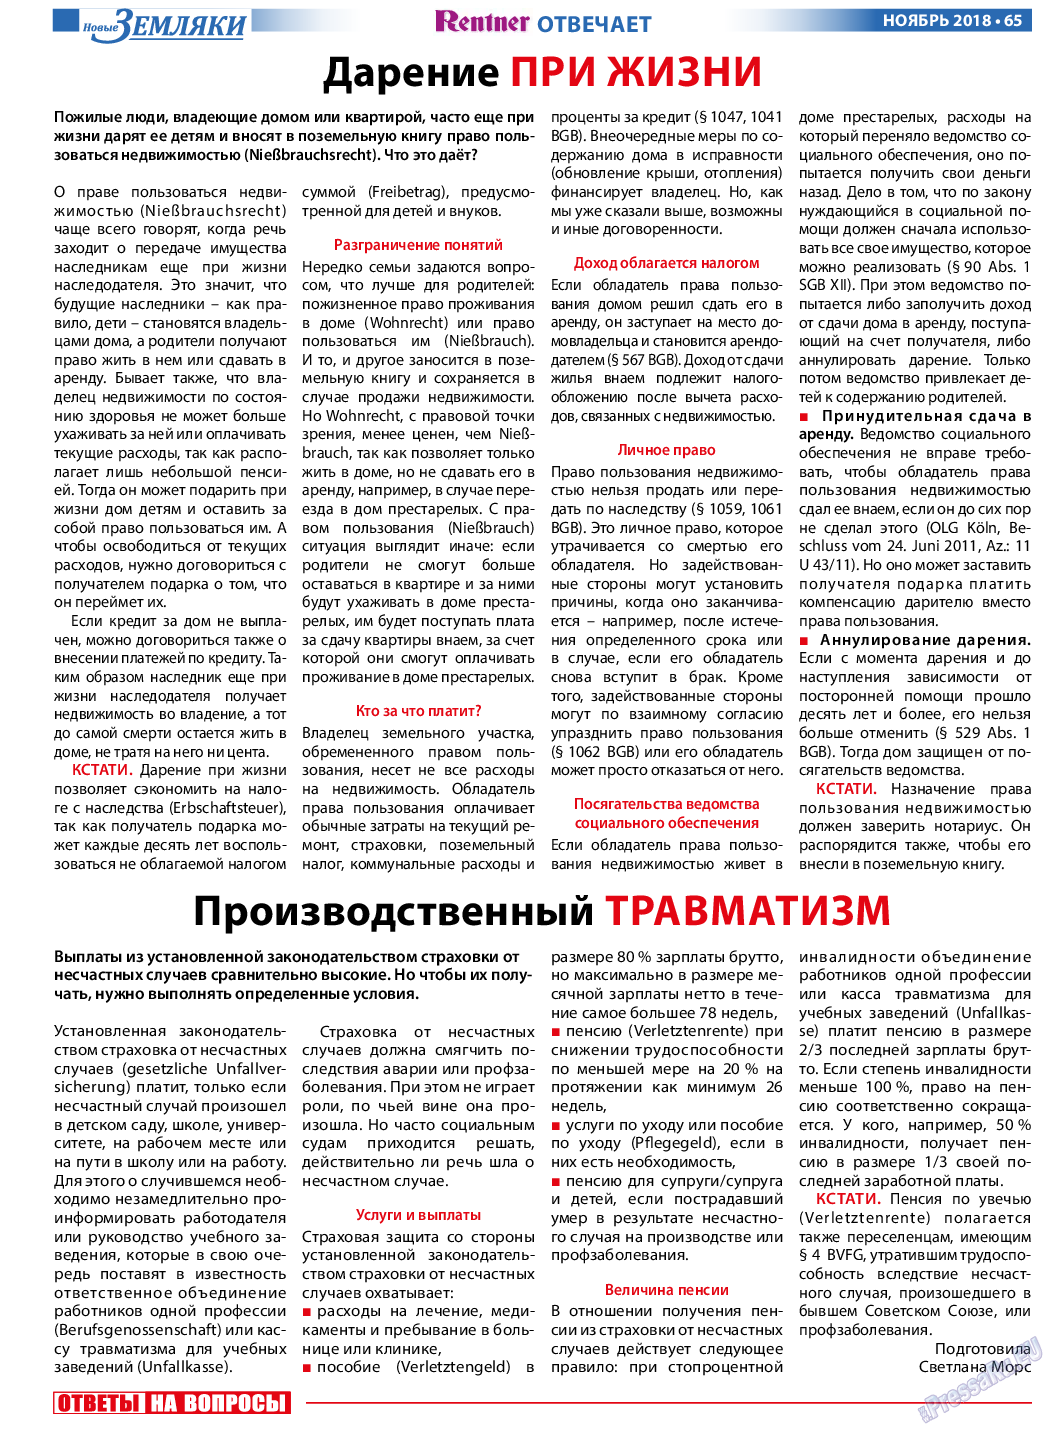 Новые Земляки, газета. 2018 №11 стр.65